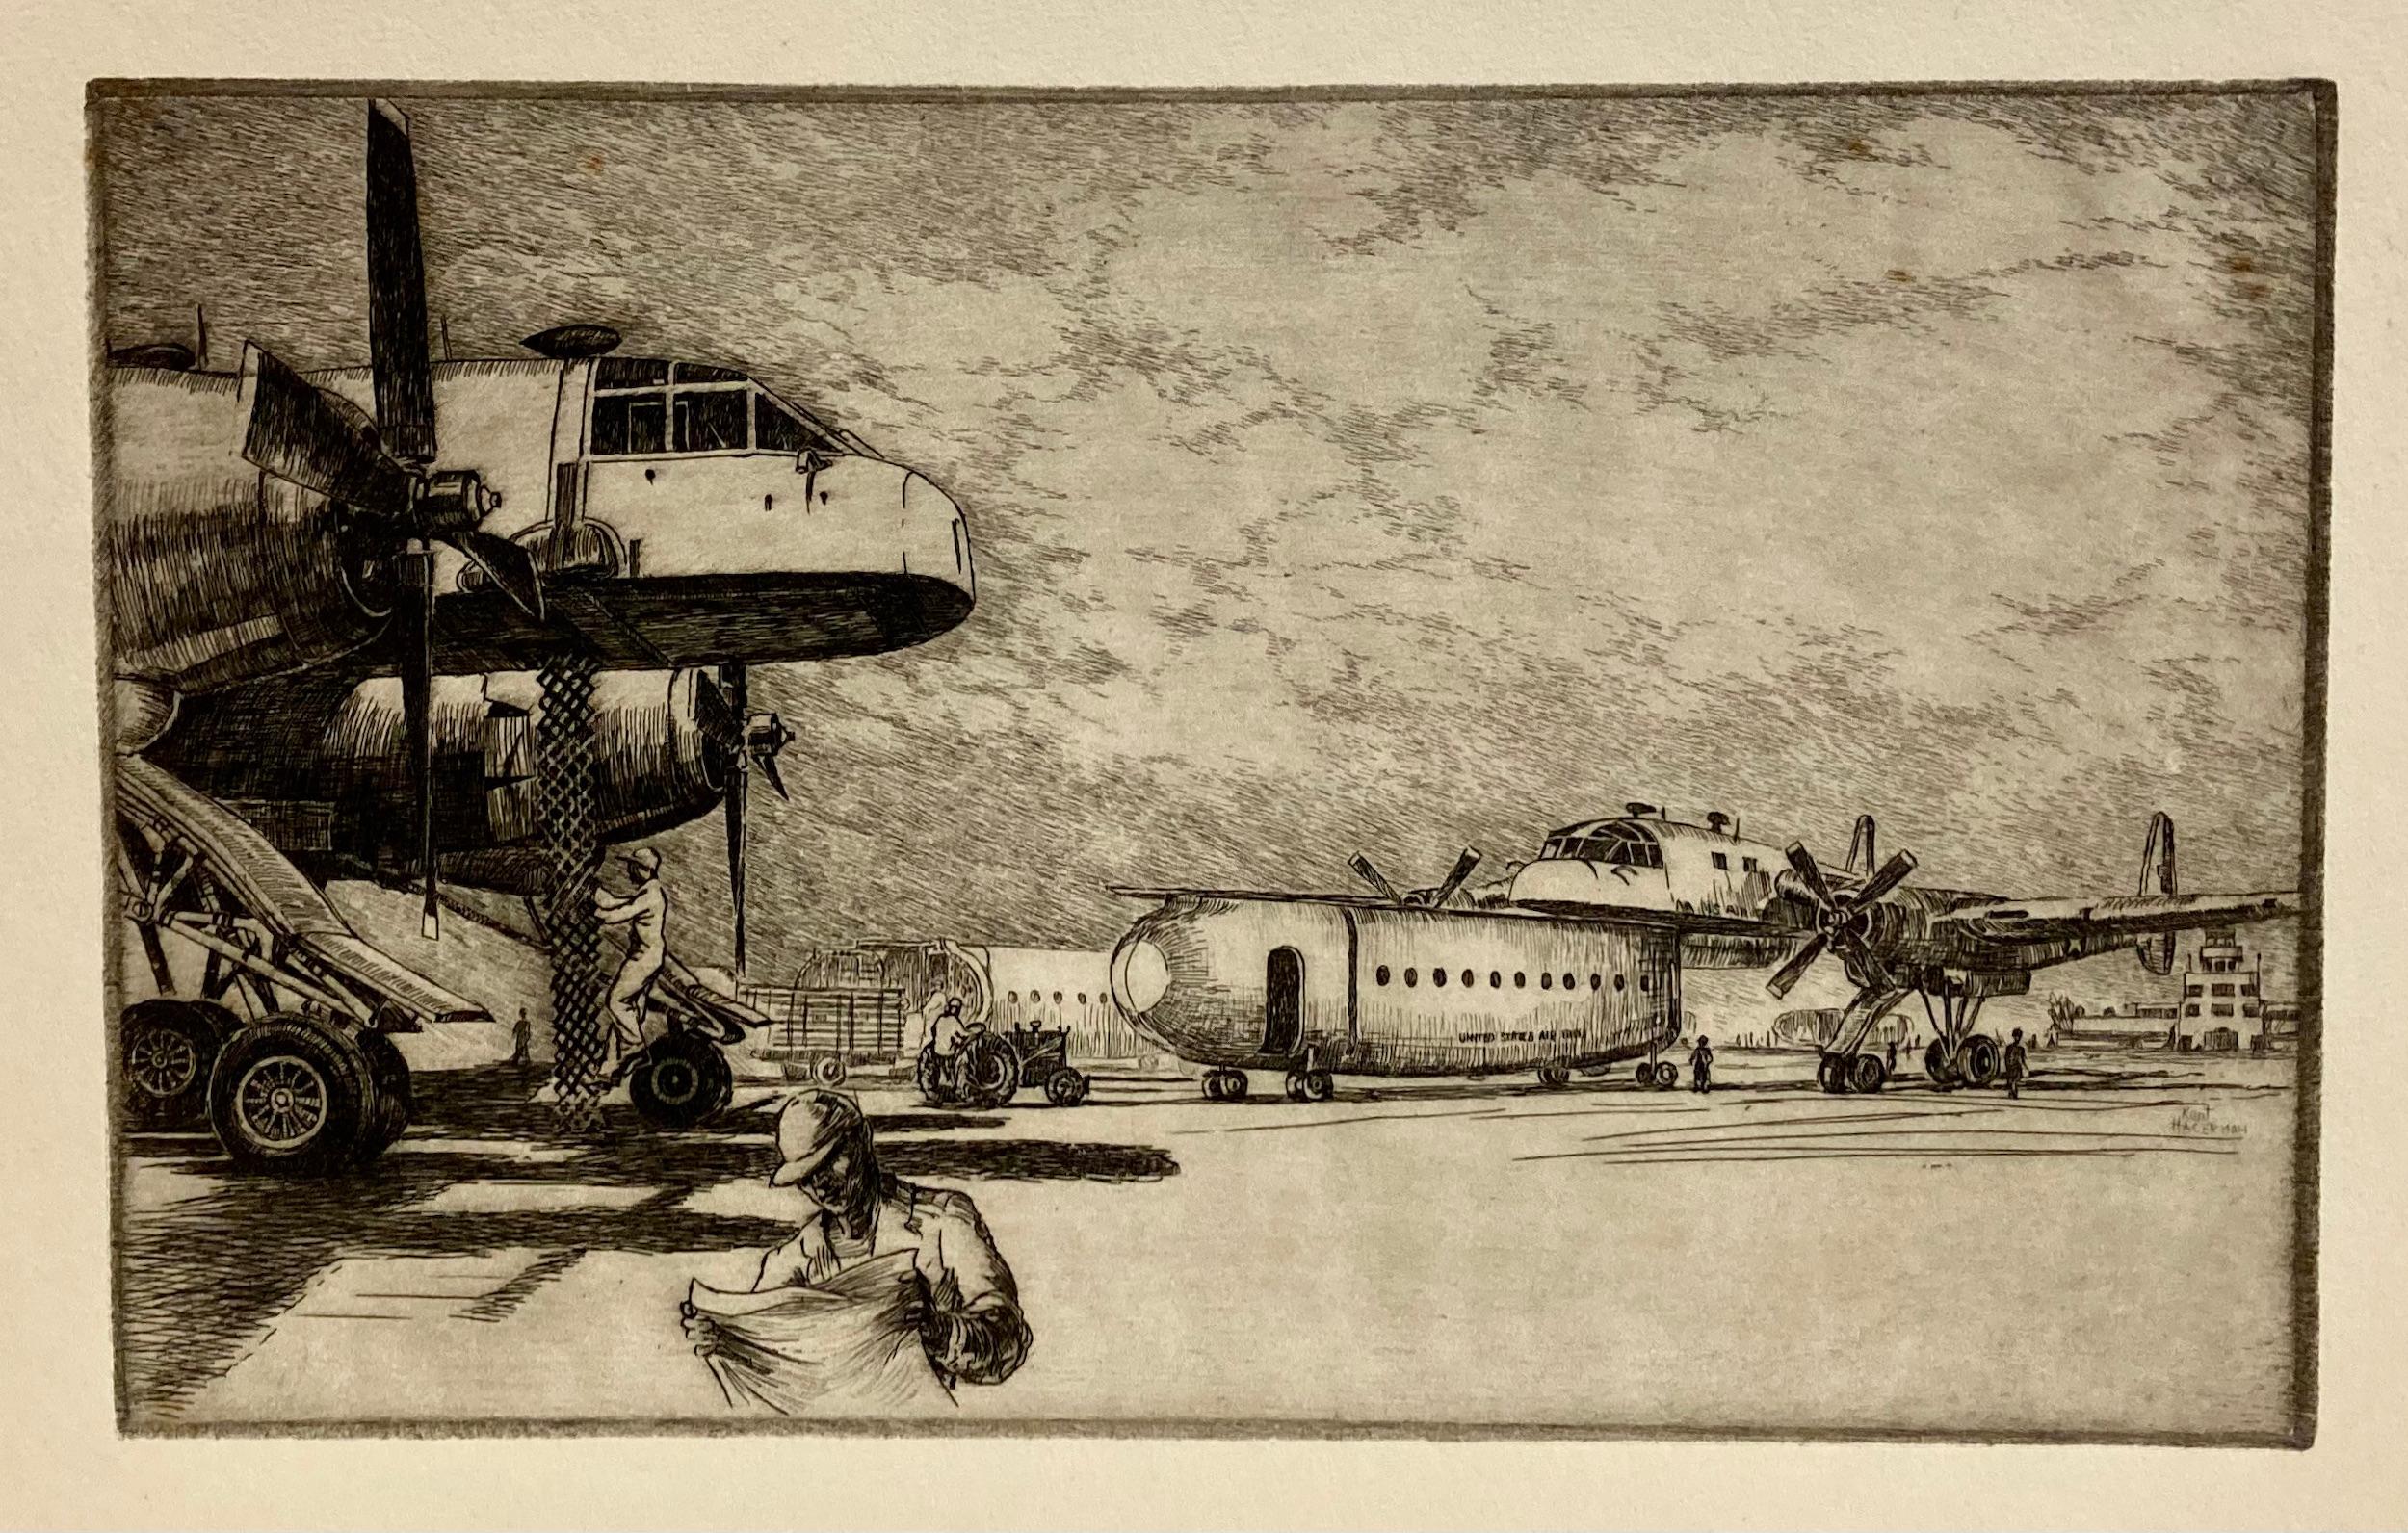 Kent Hagerman était un dessinateur extraordinaire qui parvenait à obtenir des détails fantastiques dans son travail tout en montrant l'environnement et l'atmosphère.

Cette impression capture le moment où une "nacelle" est fixée sur un avion. Un